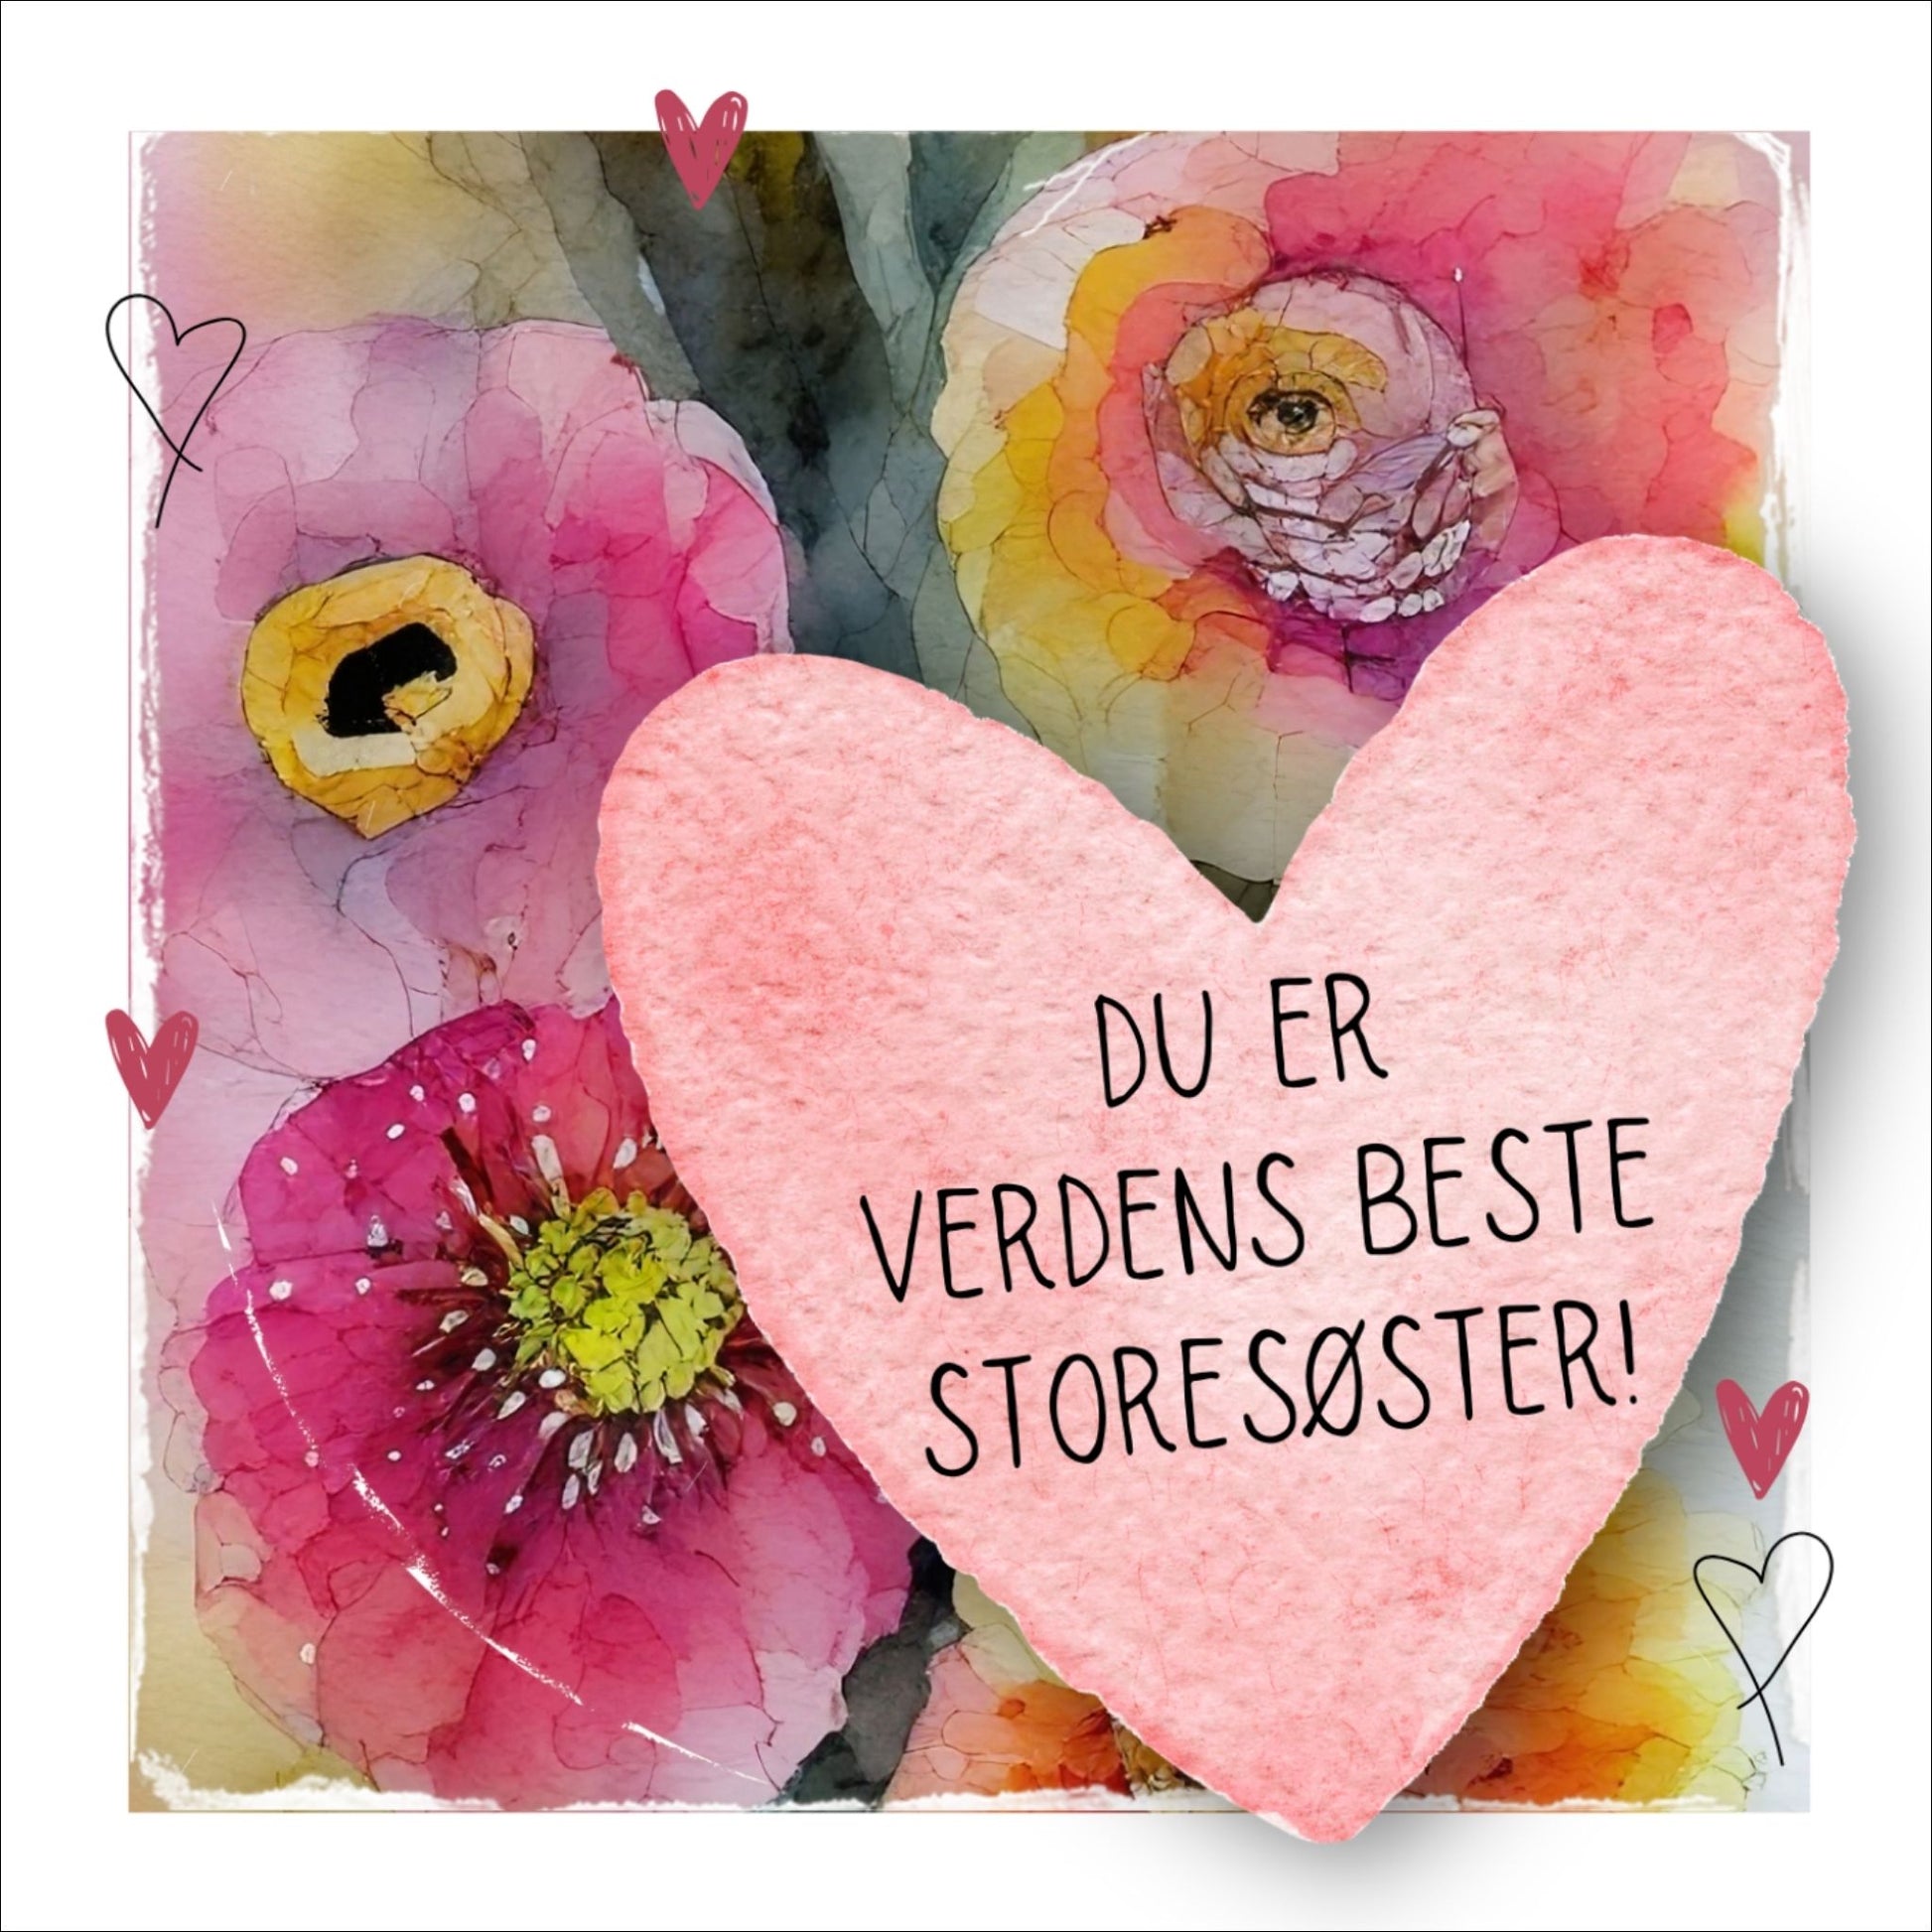 Grafisk plakat med et rosa hjerte påført tekst "Du er verdens beste storesøster". Bagrunn i cerise og guloransje blomster. Kortet har en hvit kant rundt på 1,5 cm.